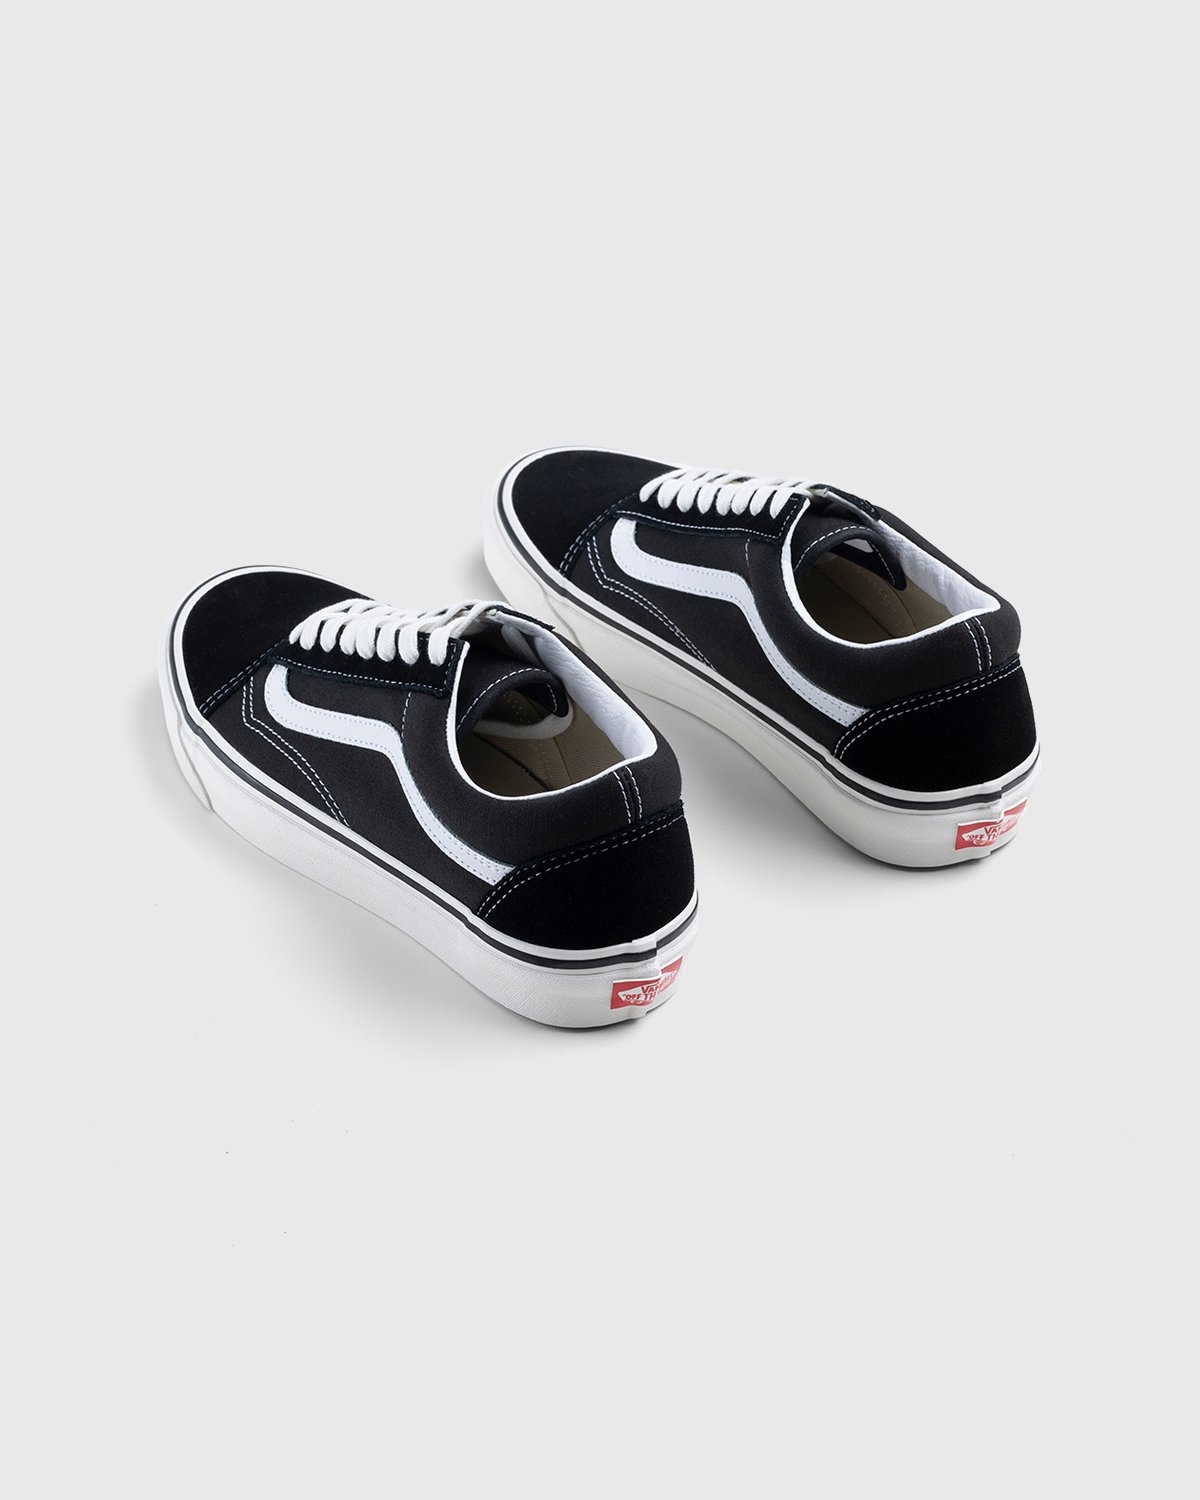 Vans – Anaheim Factory Old Skool 36 DX Black - Sneakers - Black - Image 4